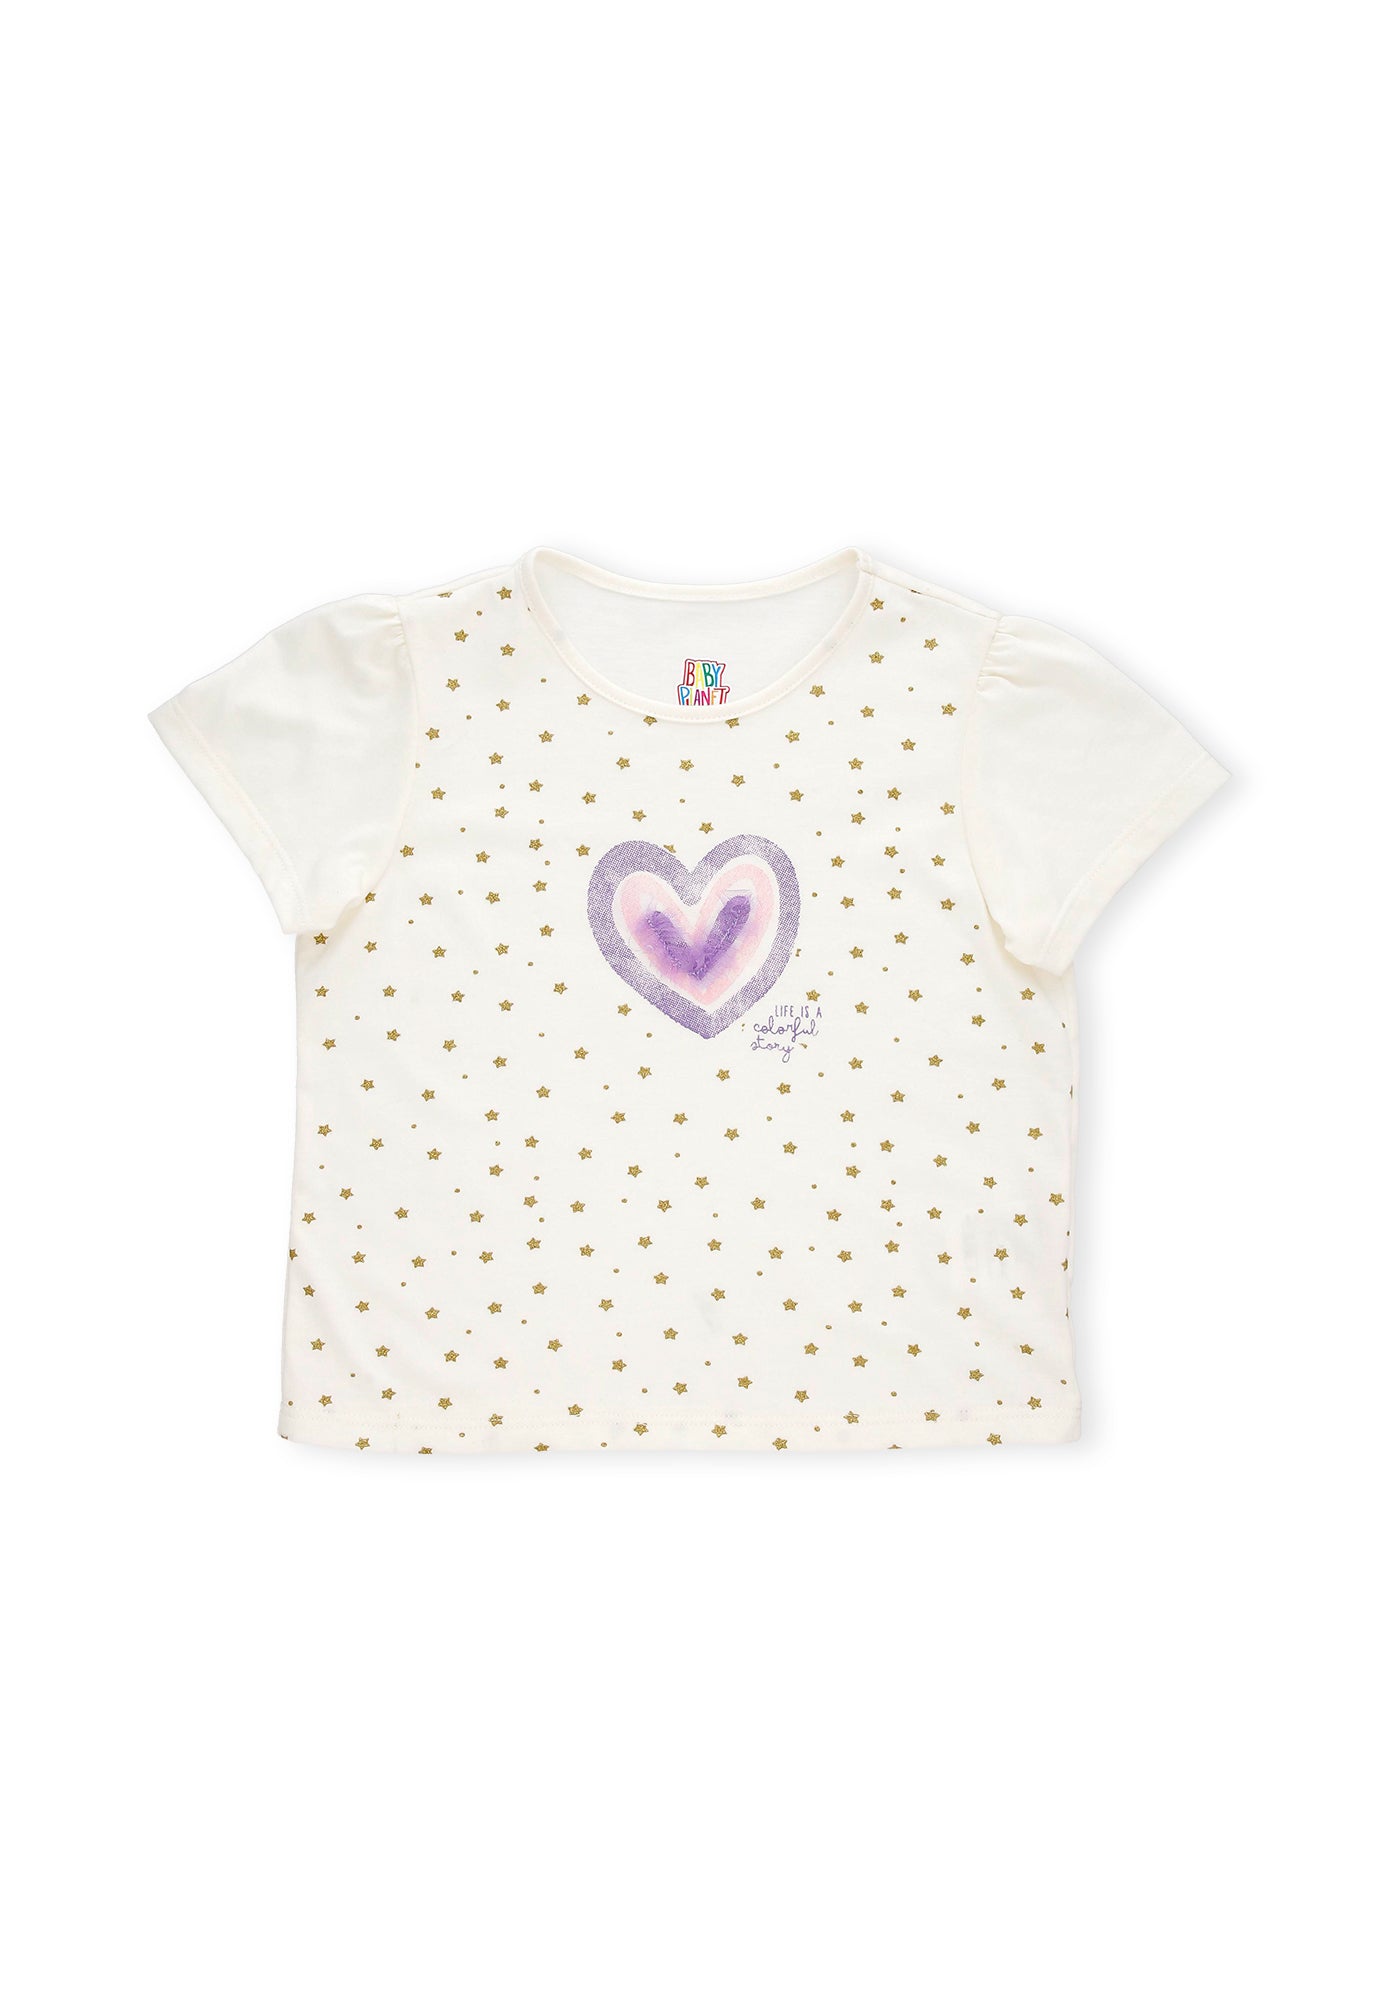 Conjunto de camiseta ivory estampada manga corta y short morado para bebé niña